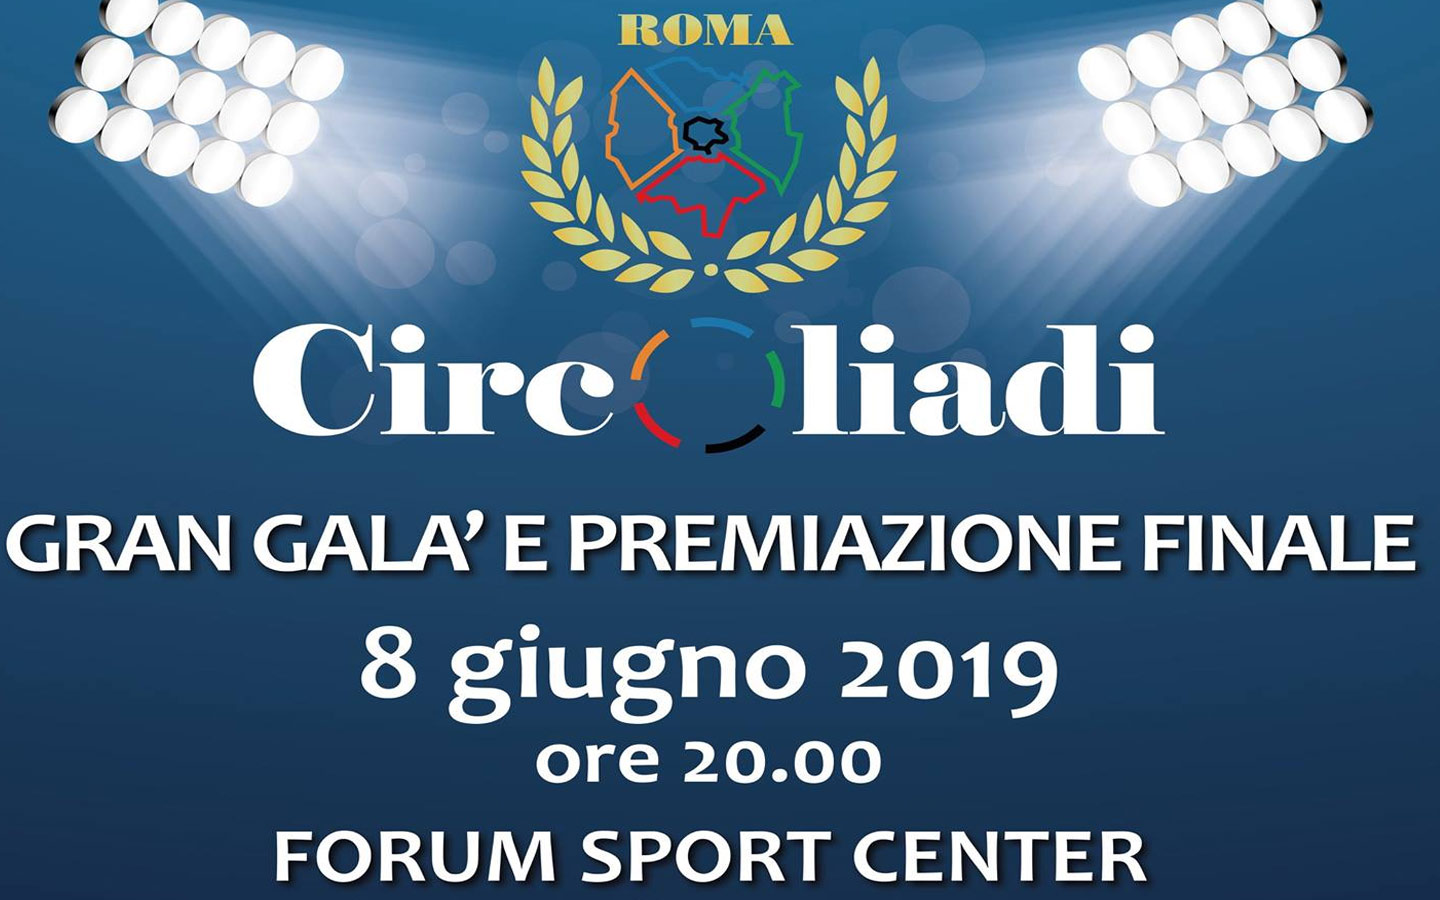 Al momento stai visualizzando Circoliadi 2019, Forum Sport Center – evento di chiusura.